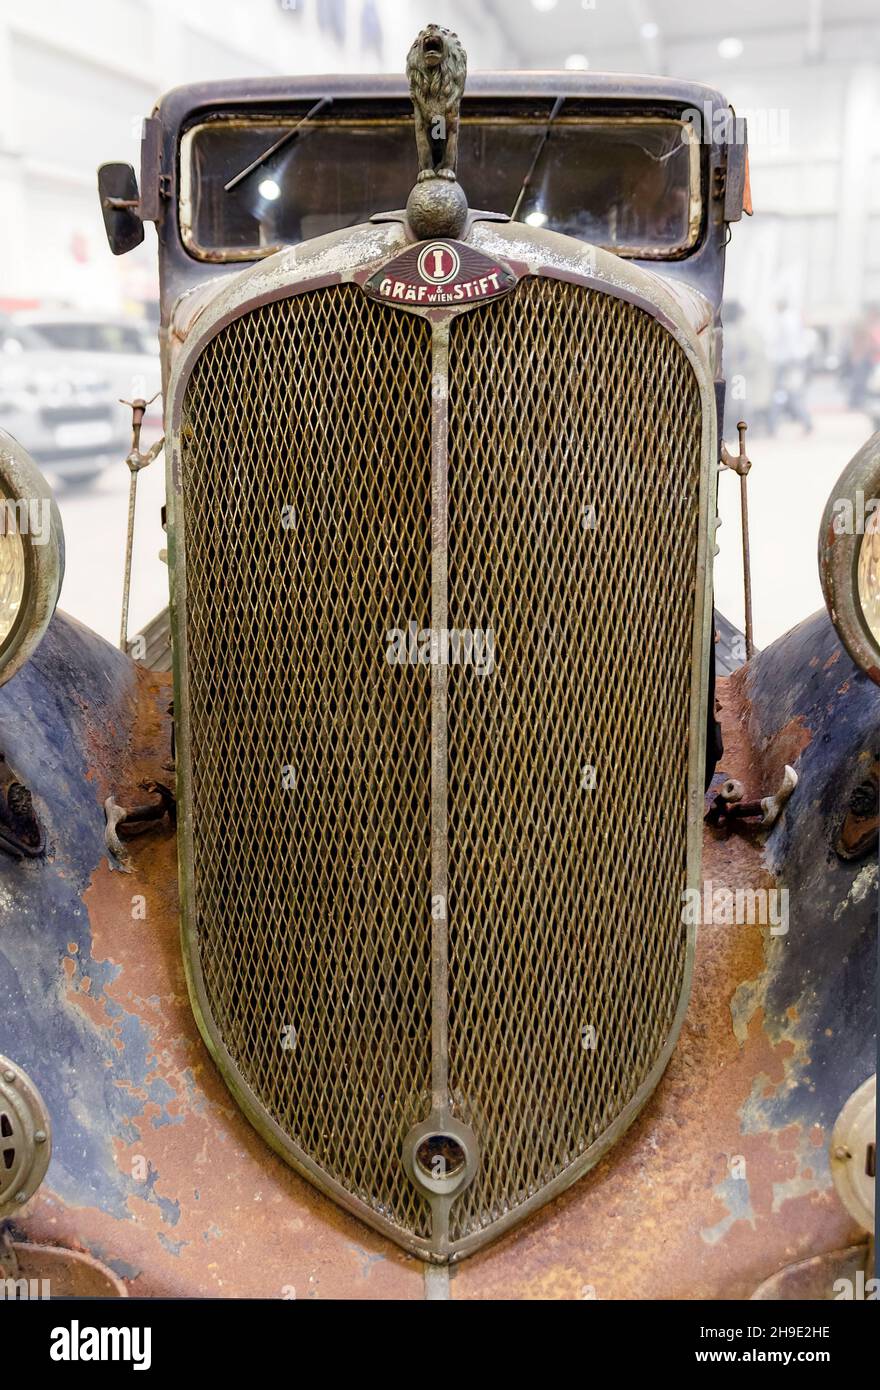 Kühlergrill eines stark verrosteten Autos des ehemaligen Wiener Automobilwerks Graef und Stift aus dem Jahr 1935 Stockfoto